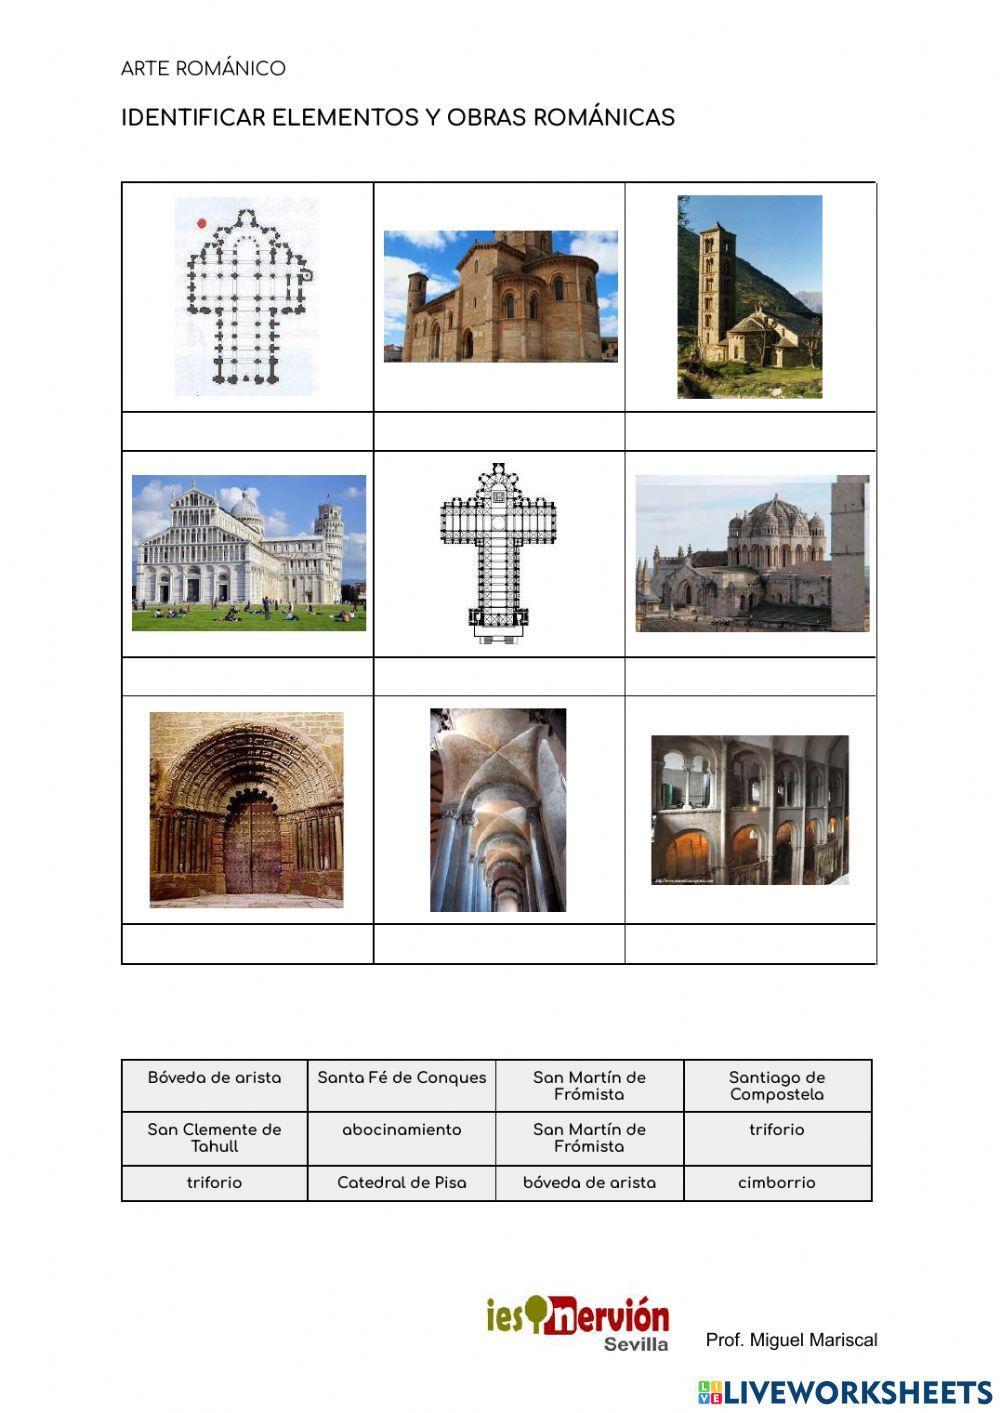 Identificar obras y elementos románicos